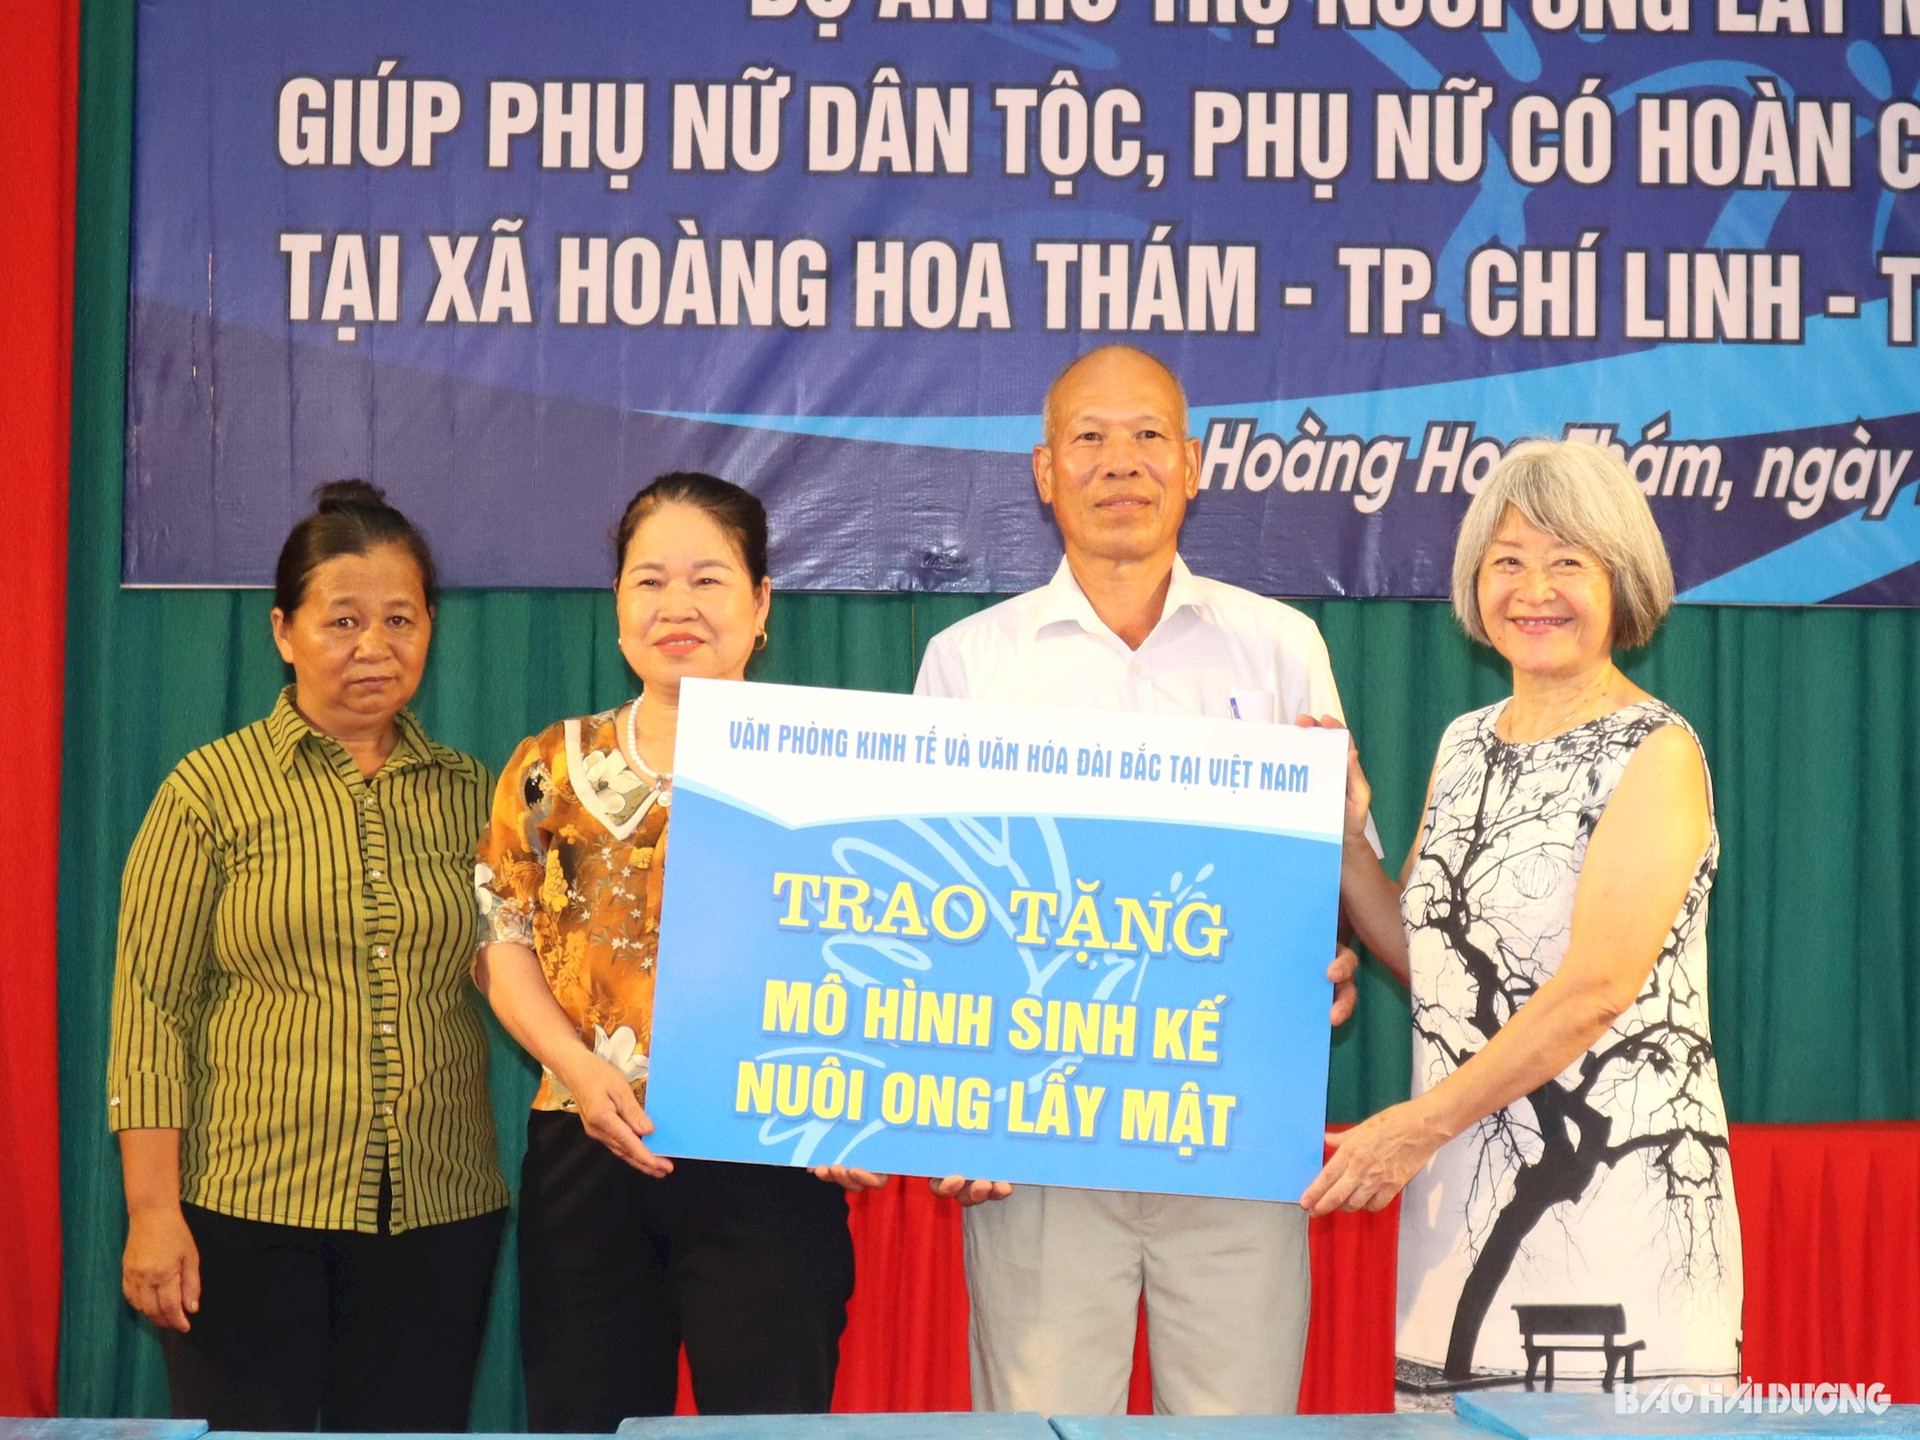 Hỗ trợ sinh kế cho phụ nữ dân tộc tại thành phố Chí Linh